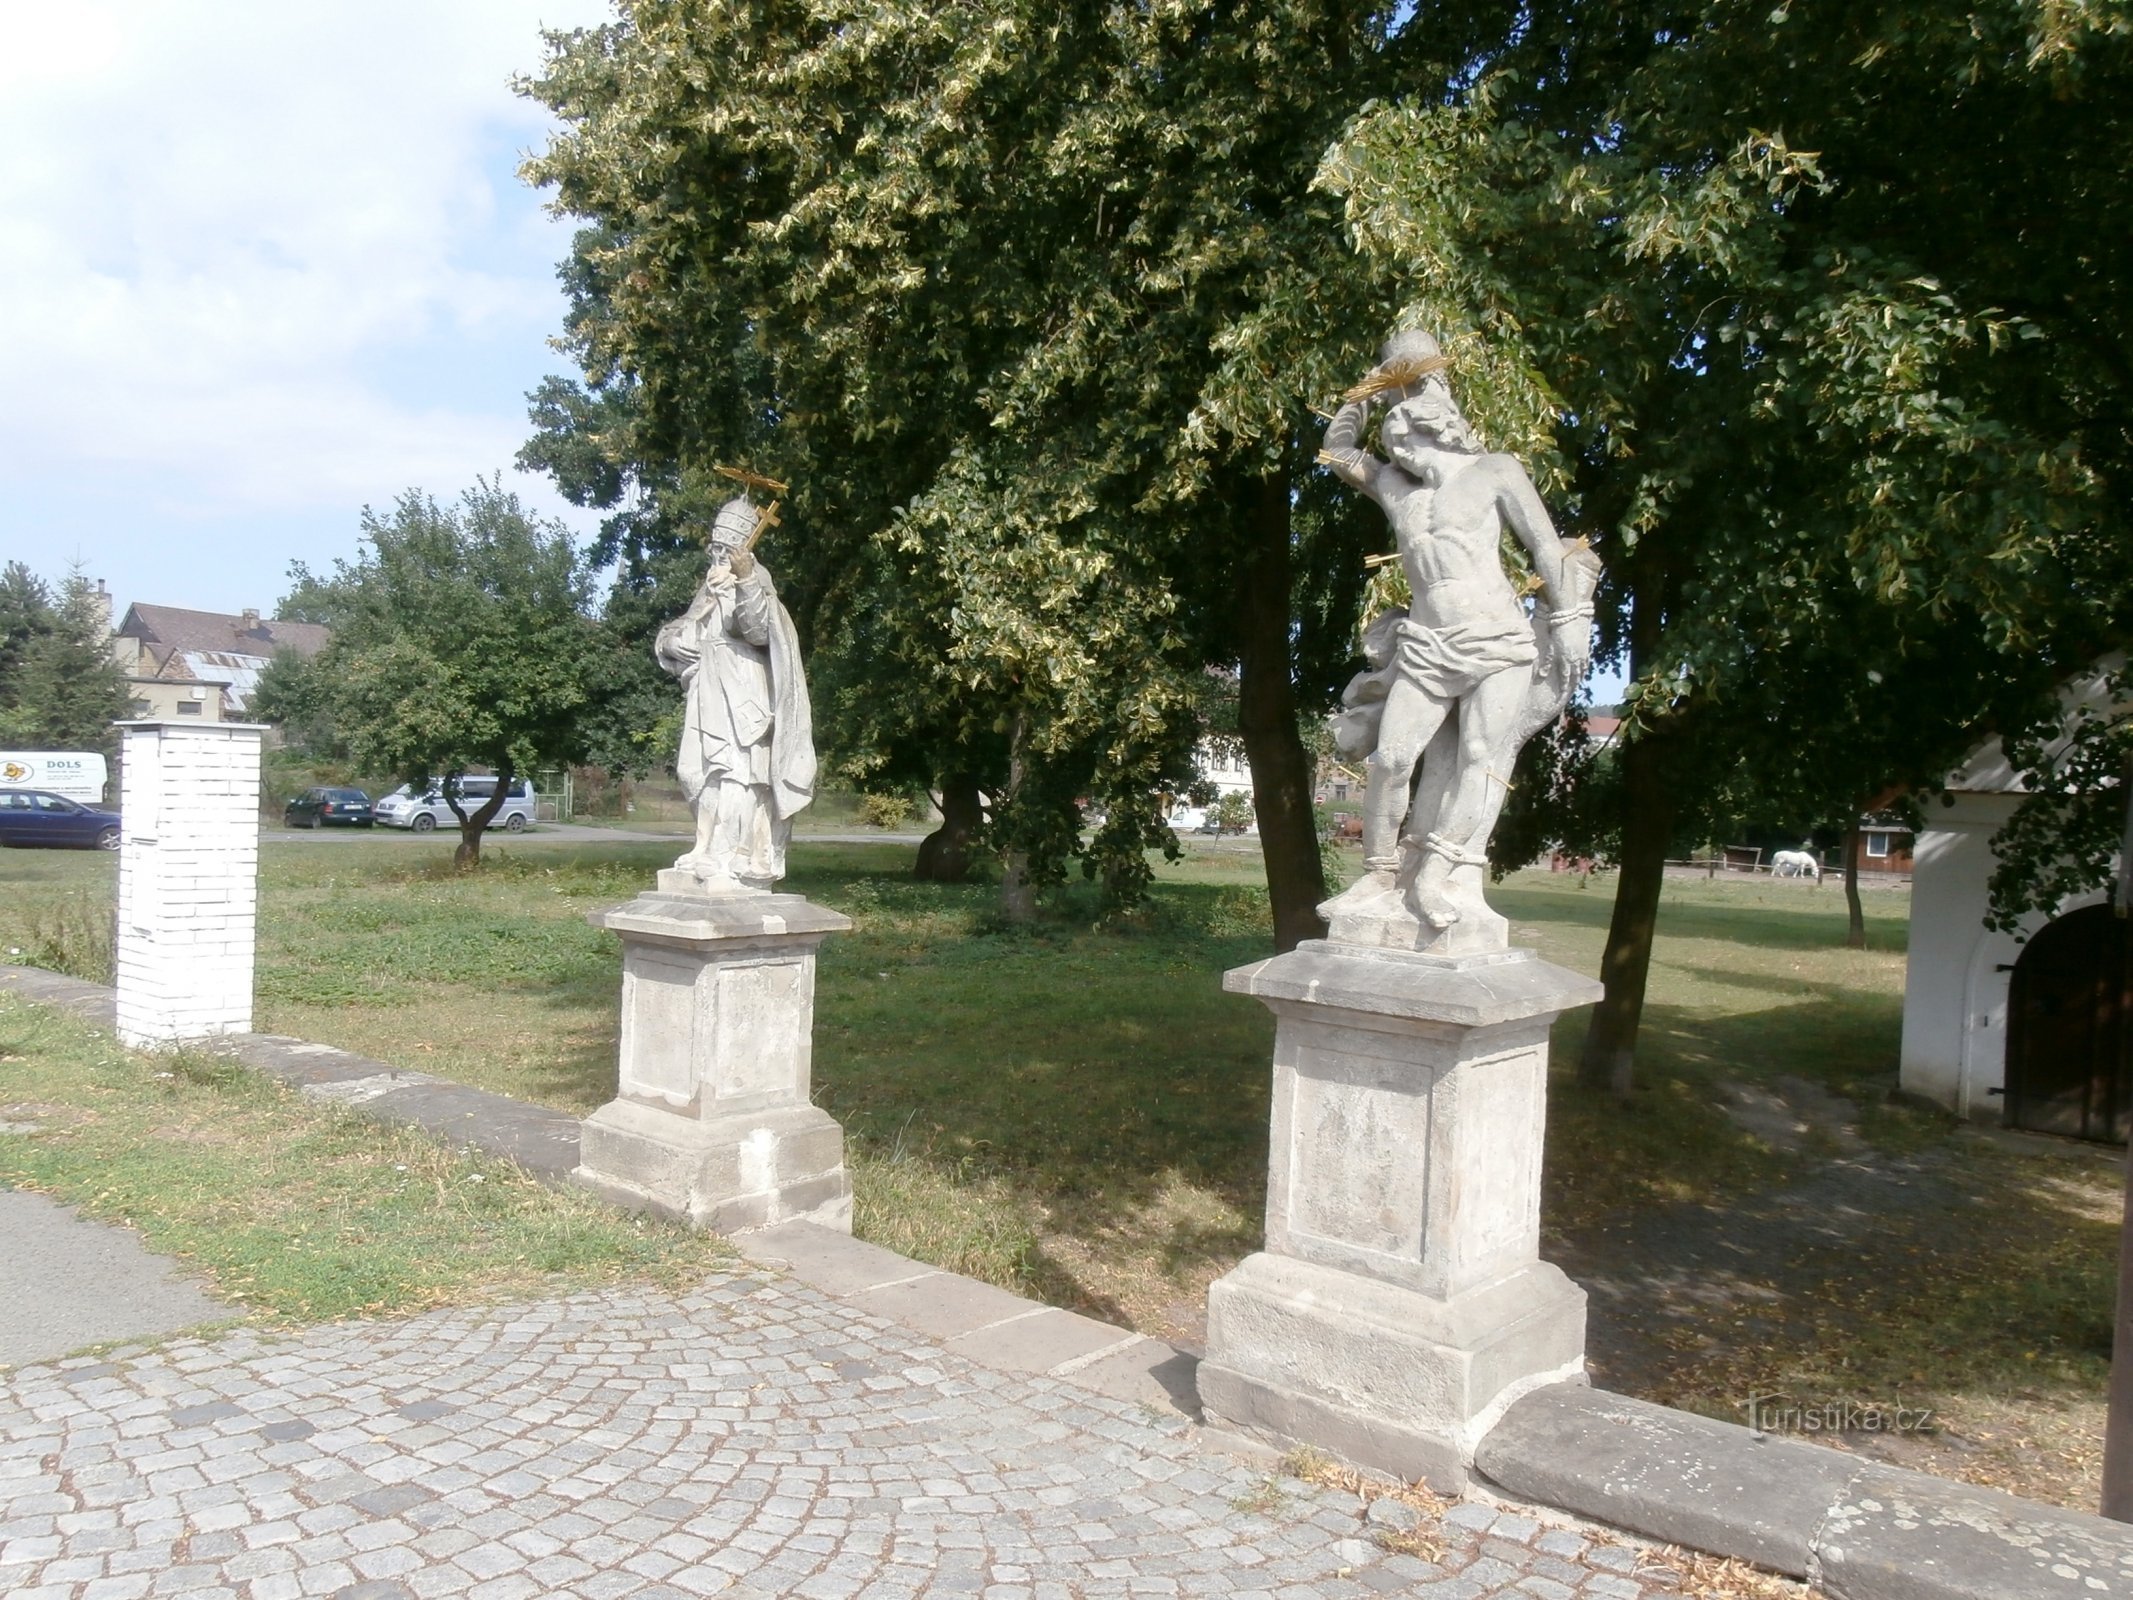 2. Estátuas de S. Fabiano e S. Šebestián em frente ao antigo portão de entrada do cemitério